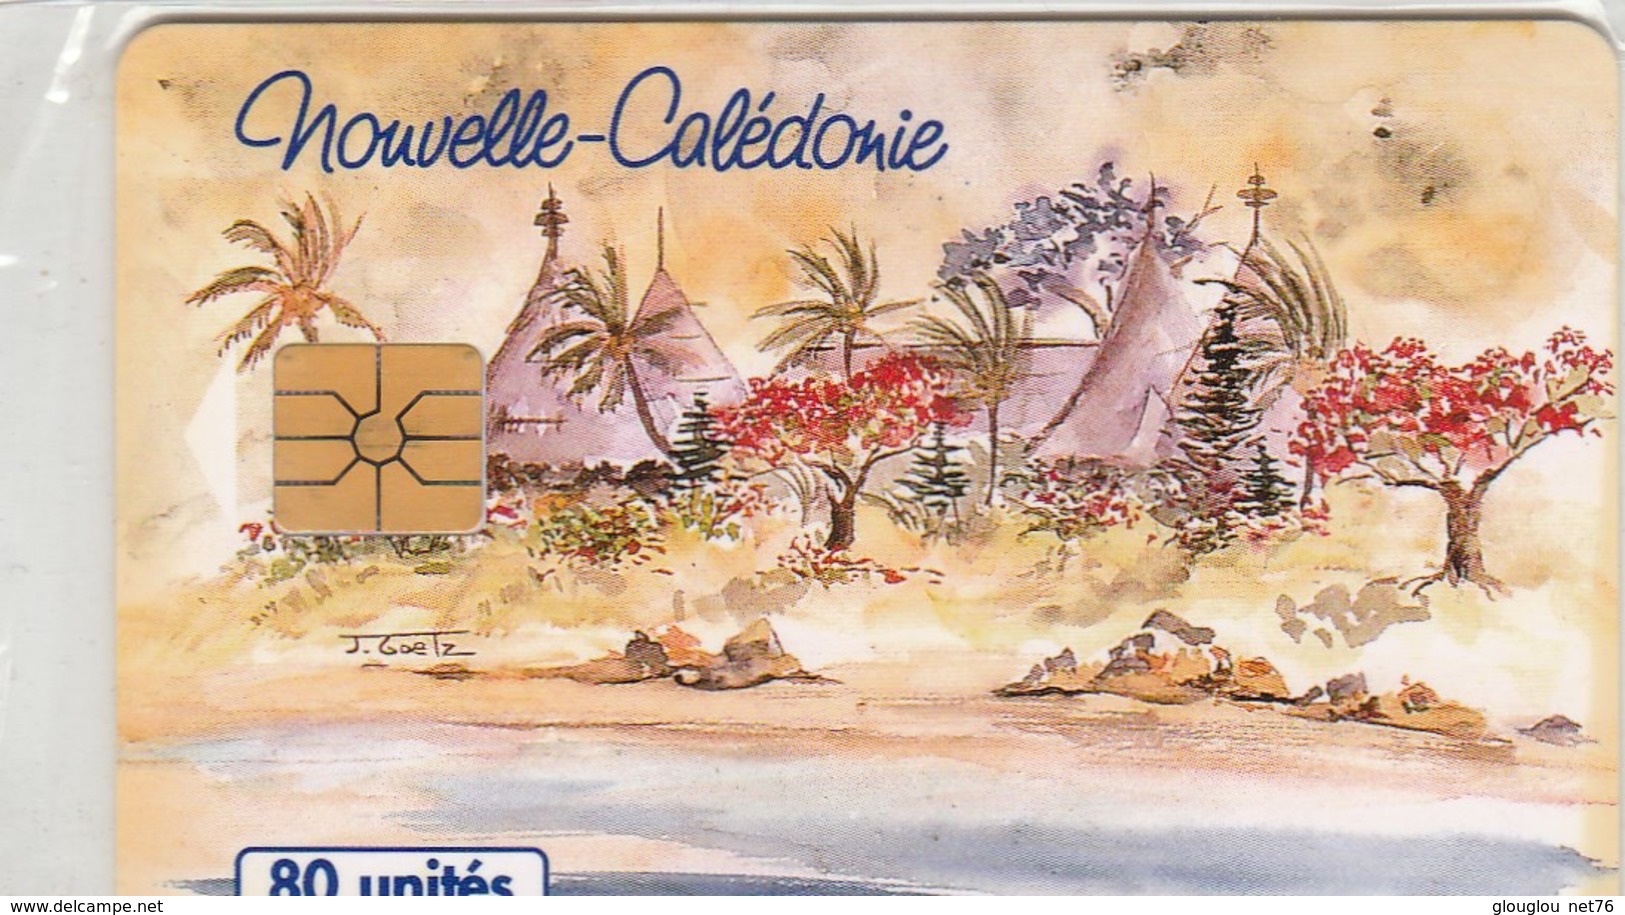 TELECARTE 80 UNITES  NOUVELLE-CALEDONIE - Nouvelle-Calédonie